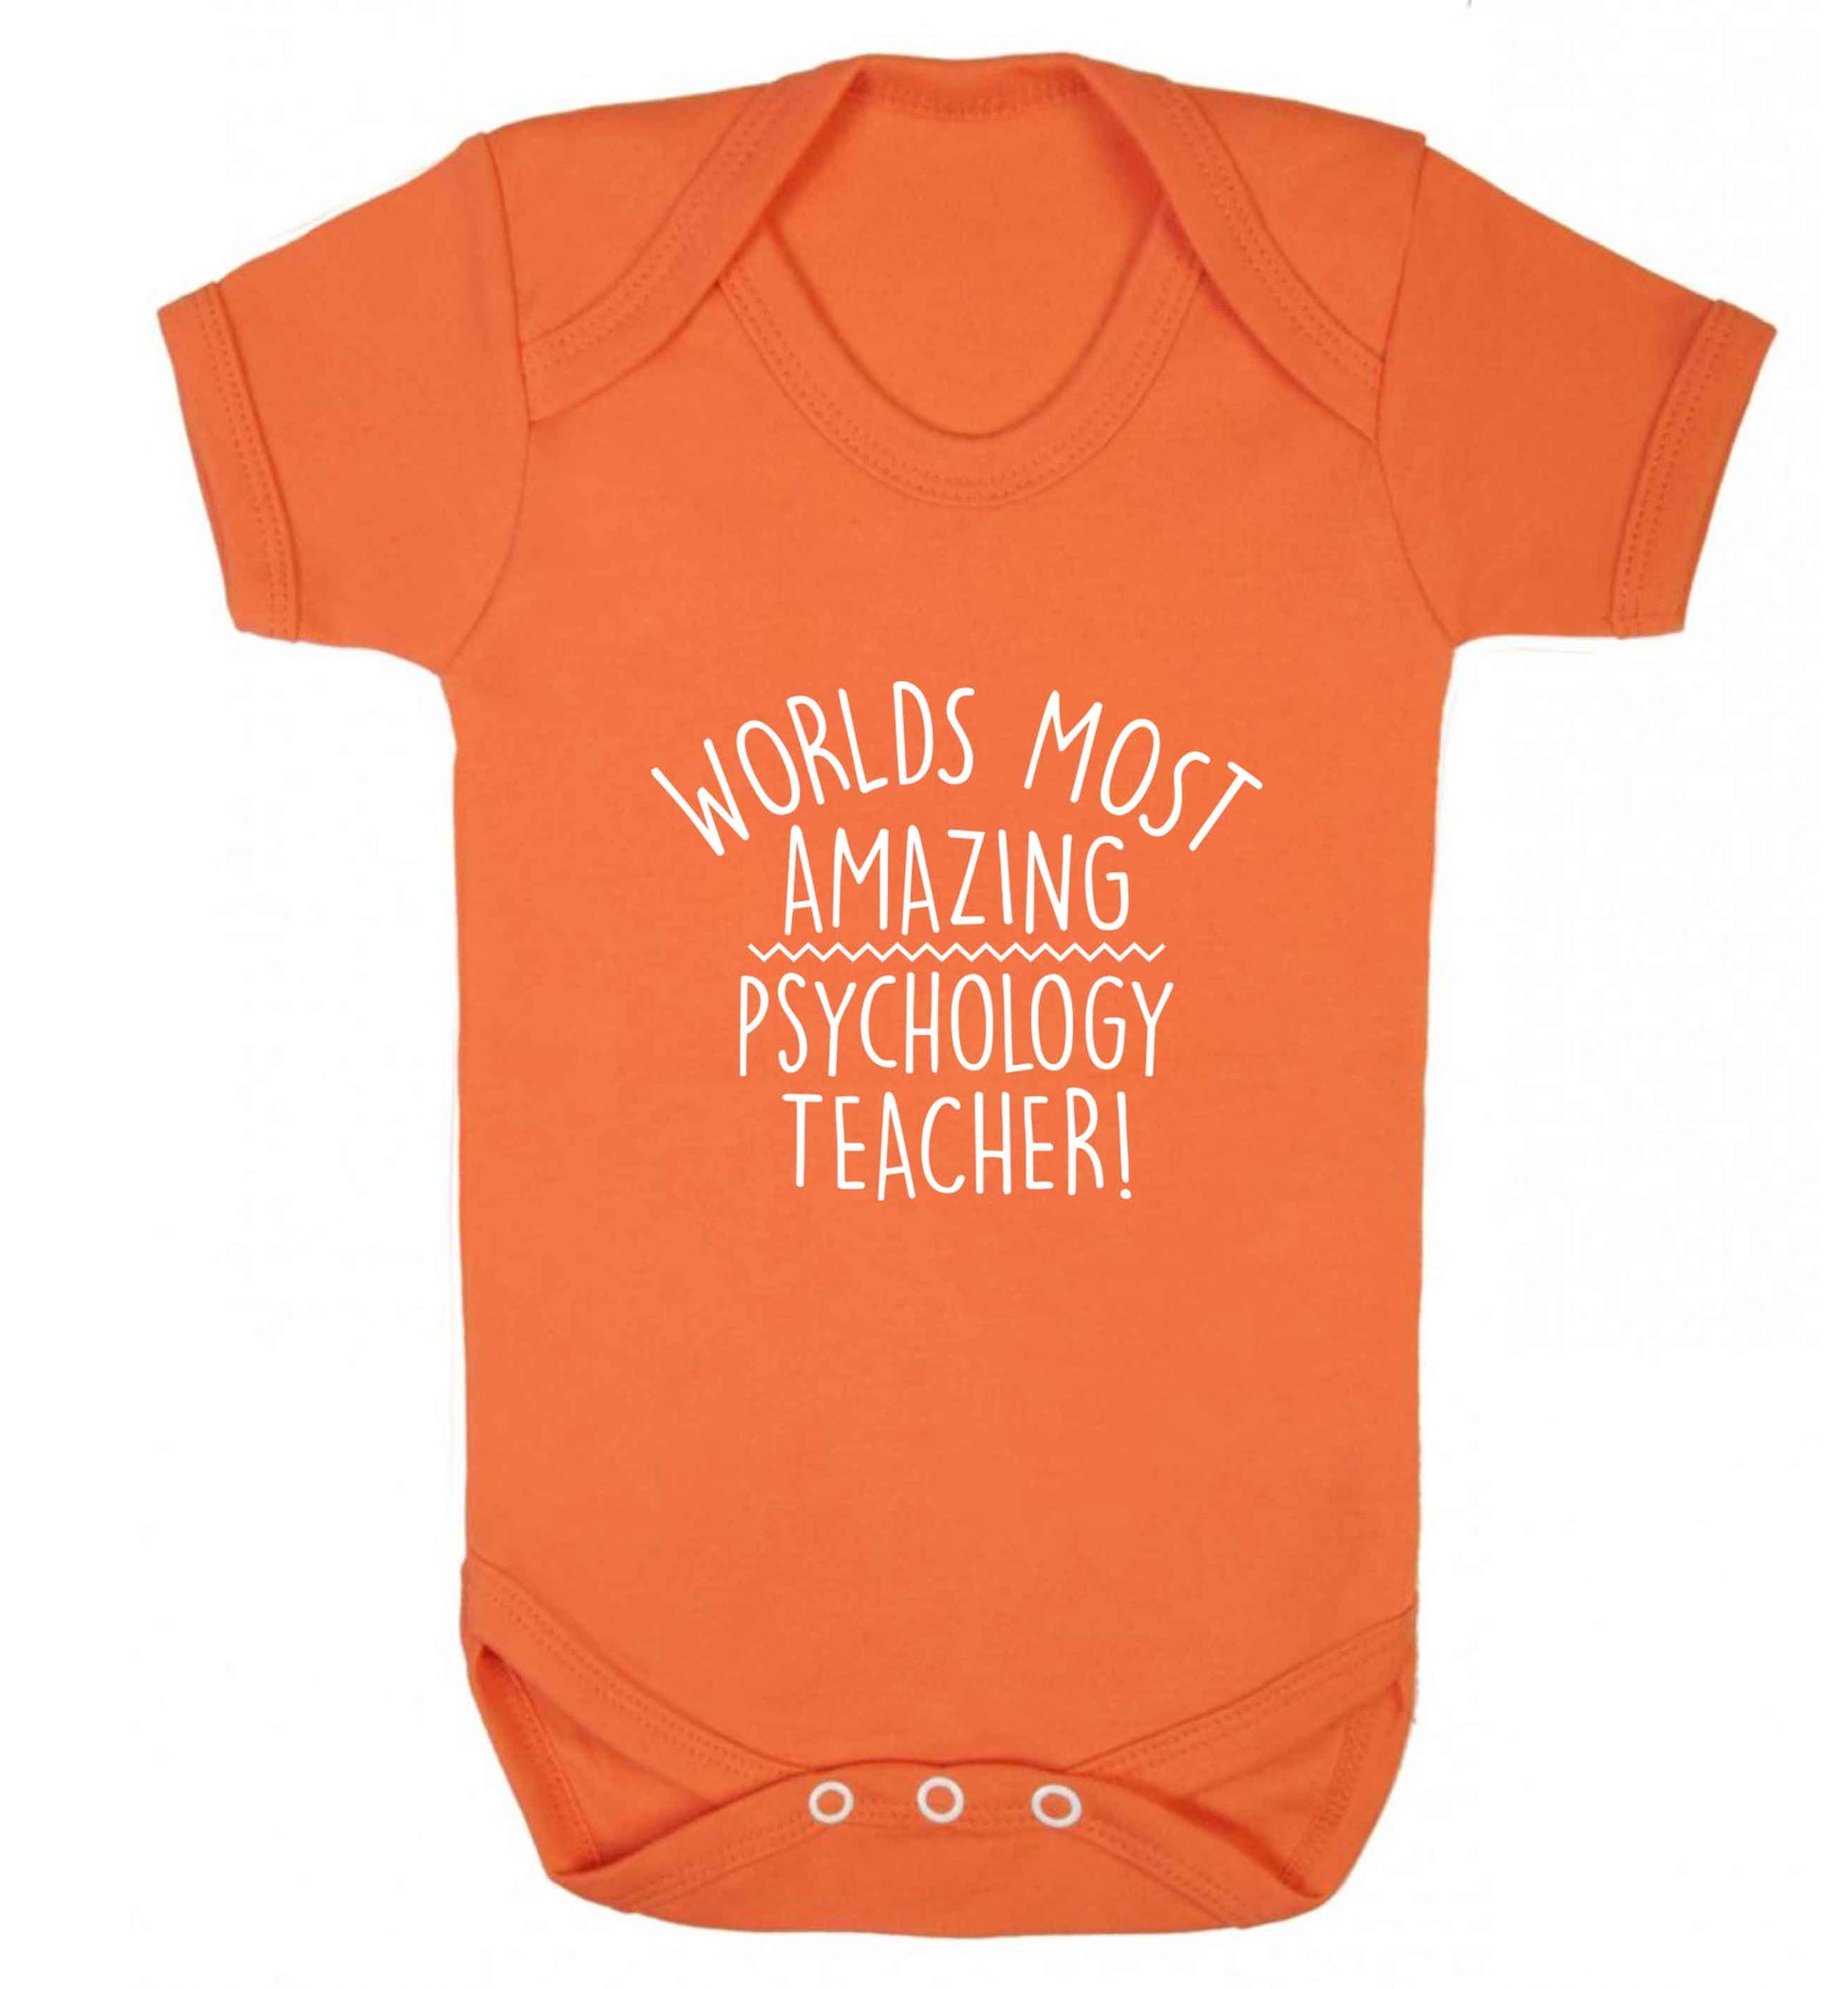 Worlds most amazing psychology teacher baby vest orange 18-24 months